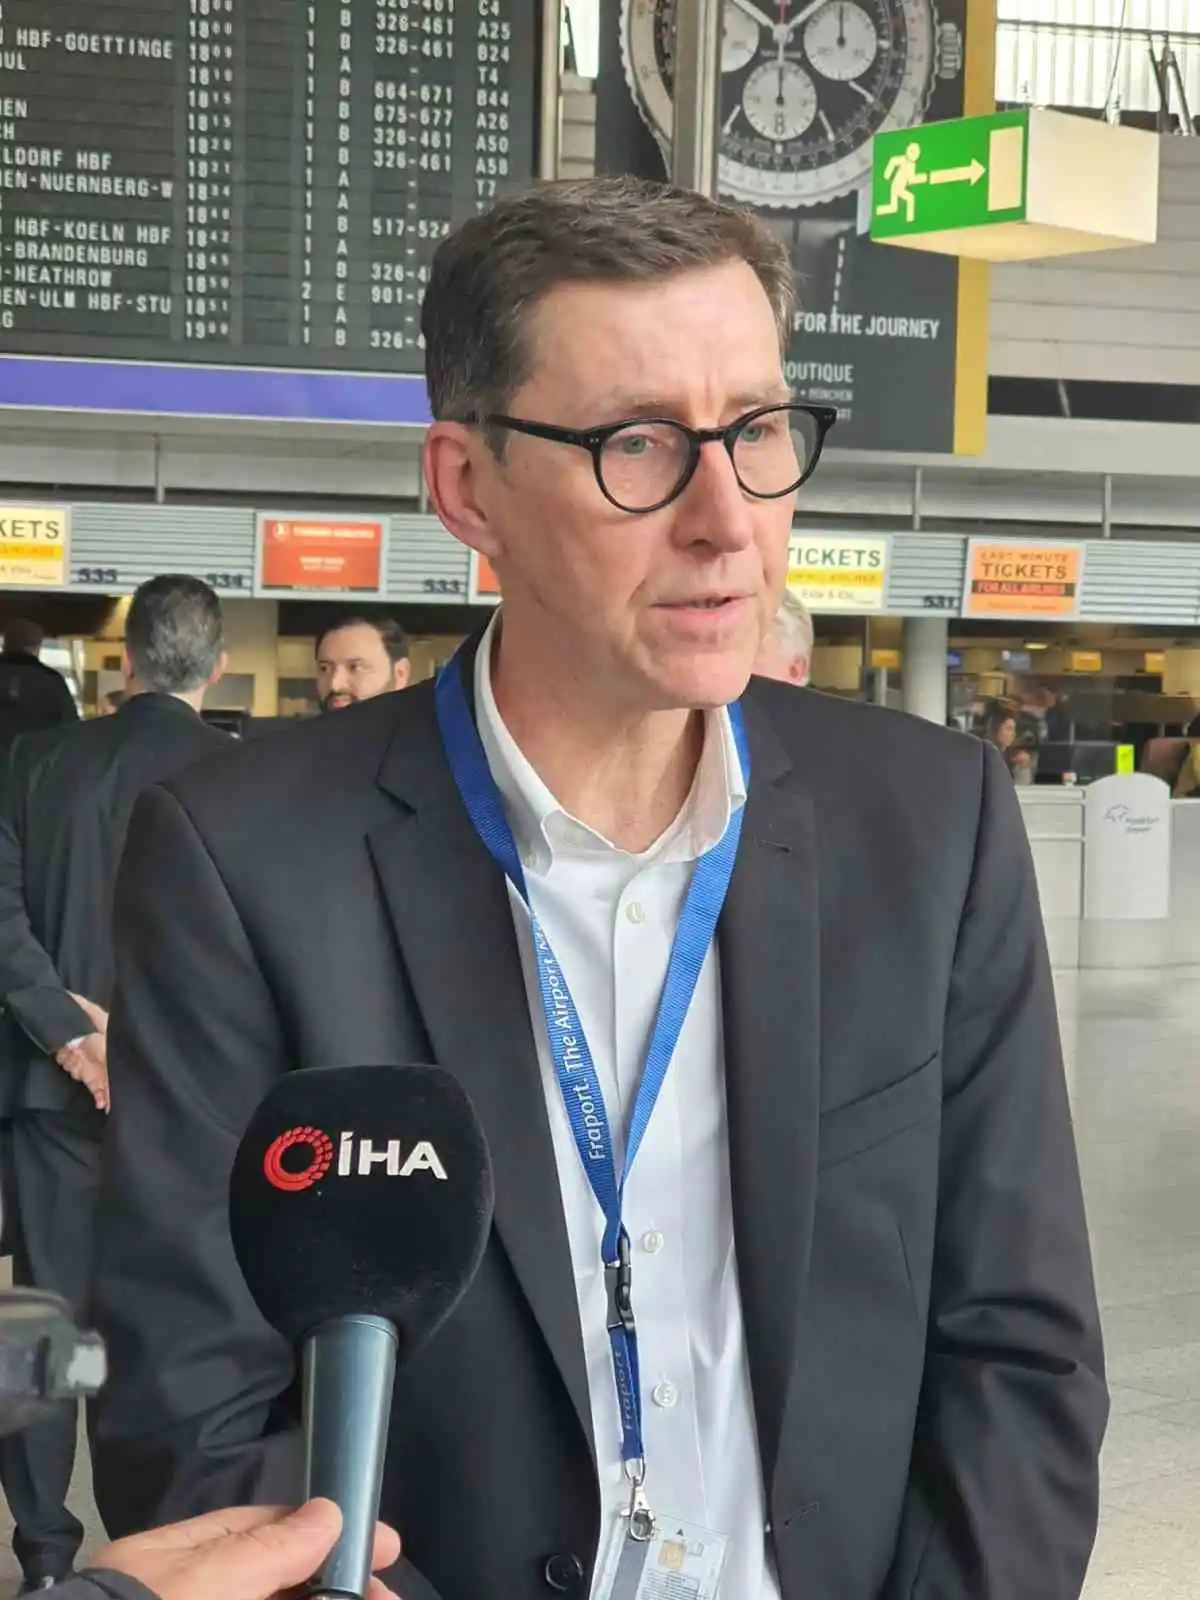 Frankfurt Havaalanı’nda depremzedeler için saygı duruşunda bulunuldu
